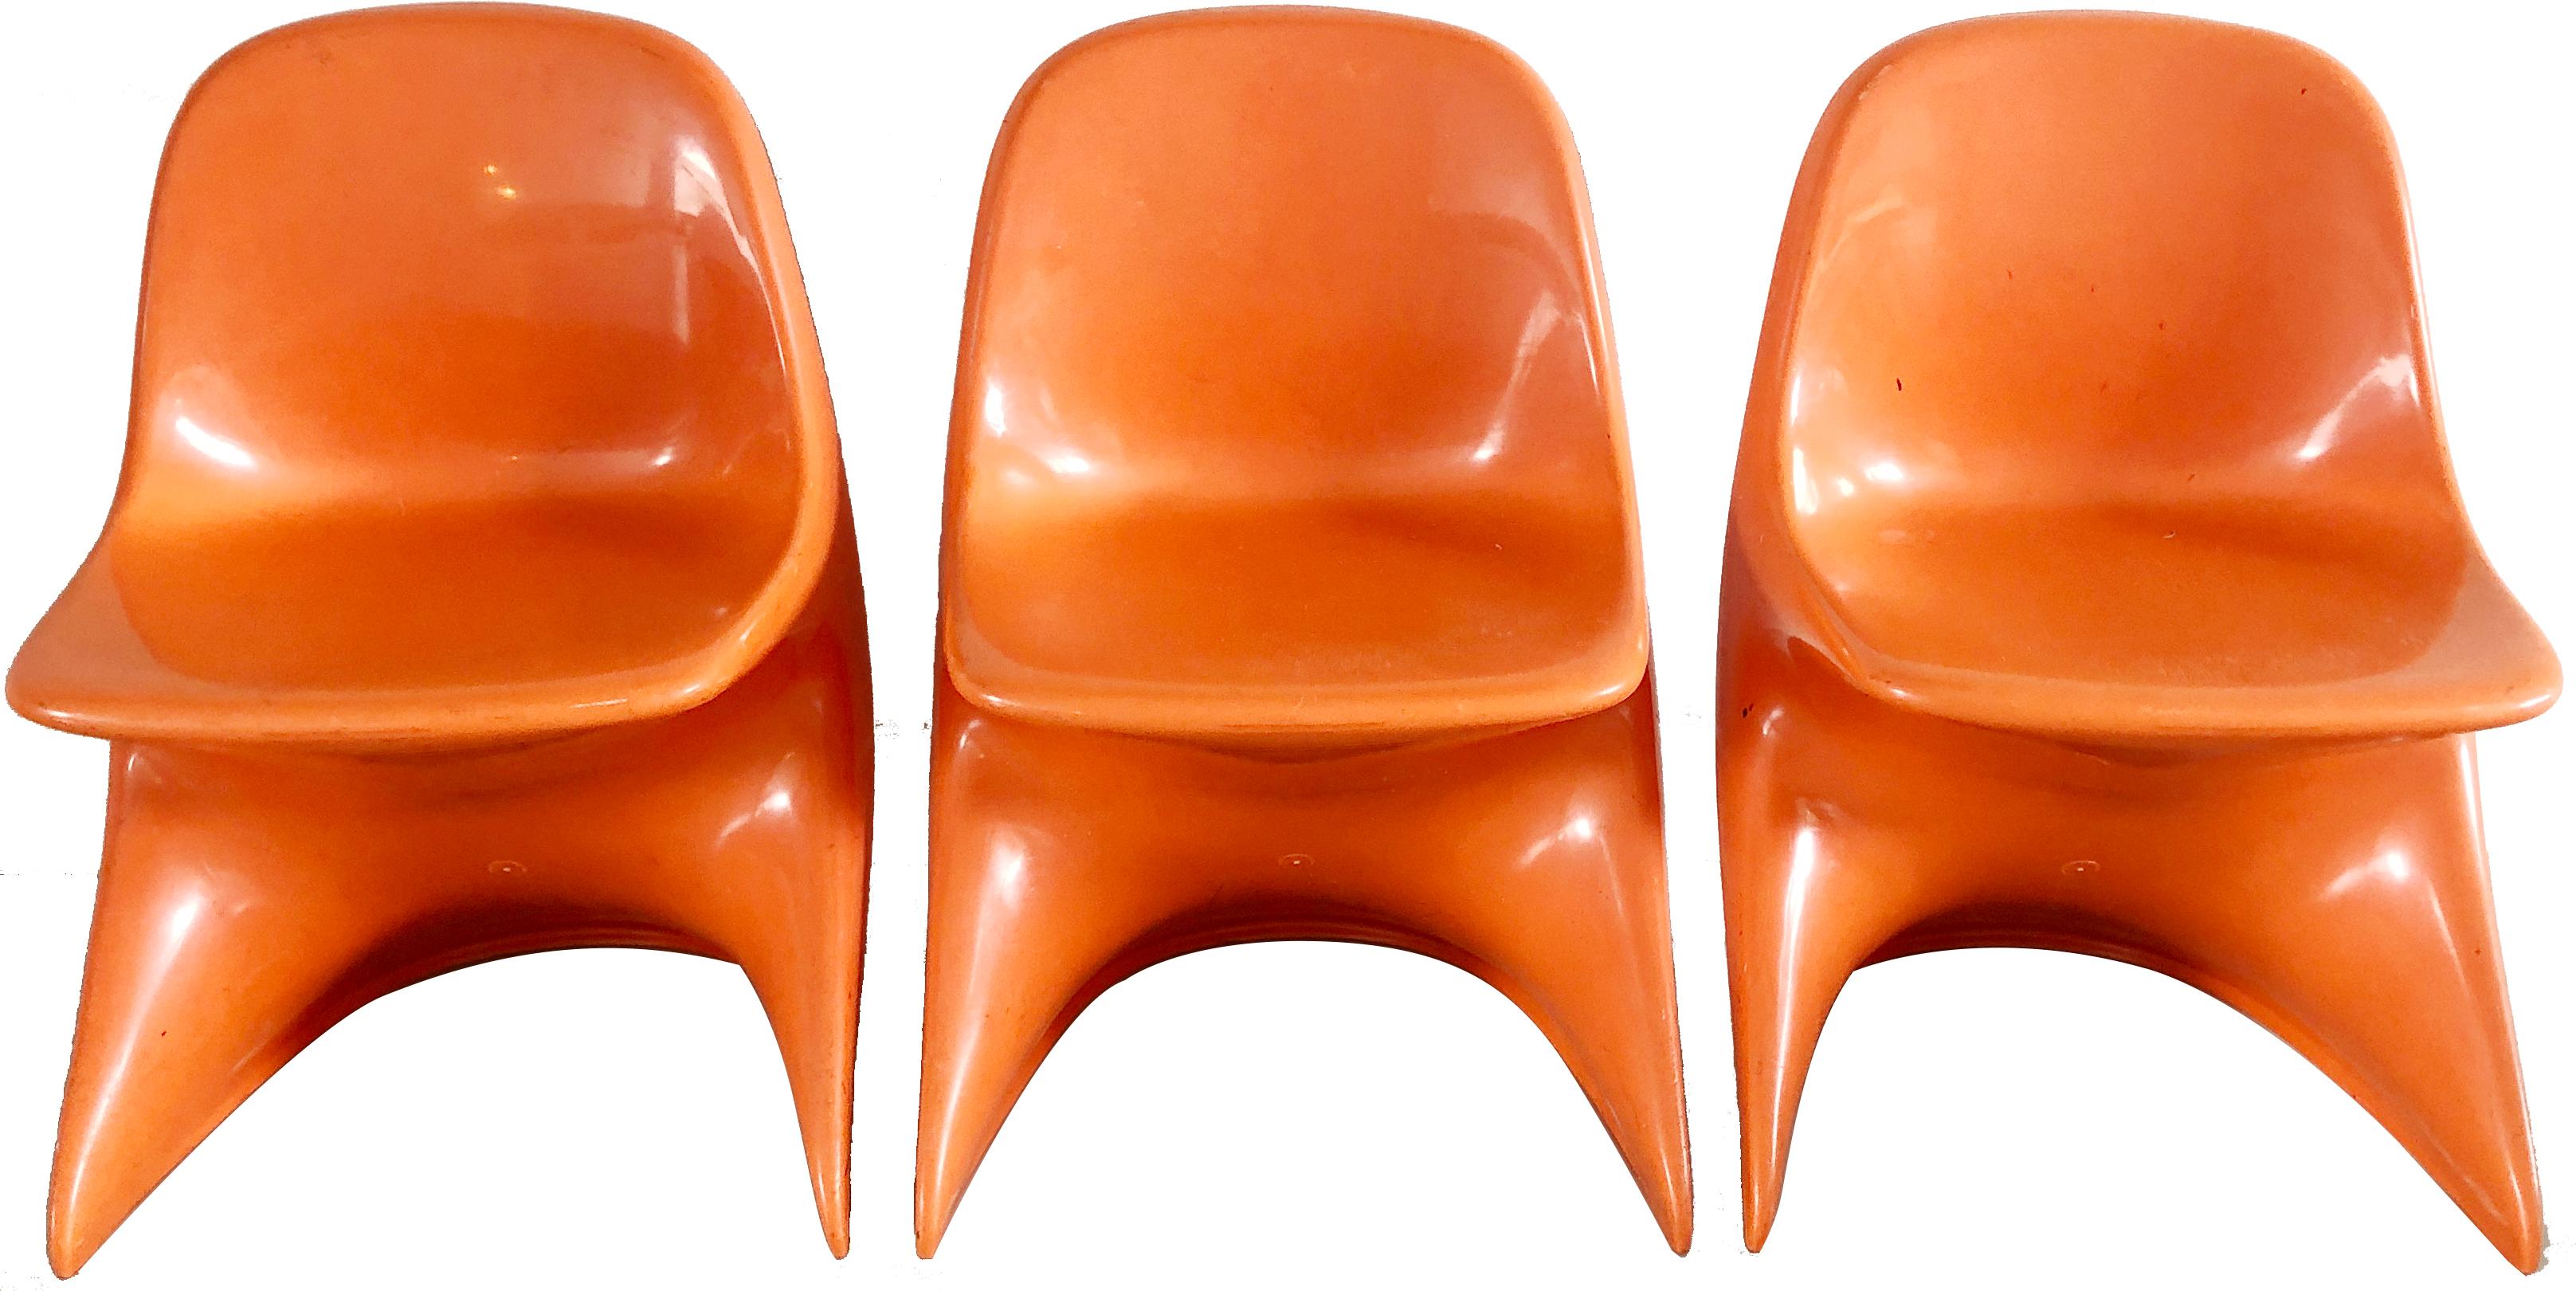 3 chaises empilables Casalino 0 conçues par Alexander Begge en 1975 et fabriquées par Casala, Allemagne, au milieu du siècle dernier. Plastique moulé orange.

Couleur orange taille 